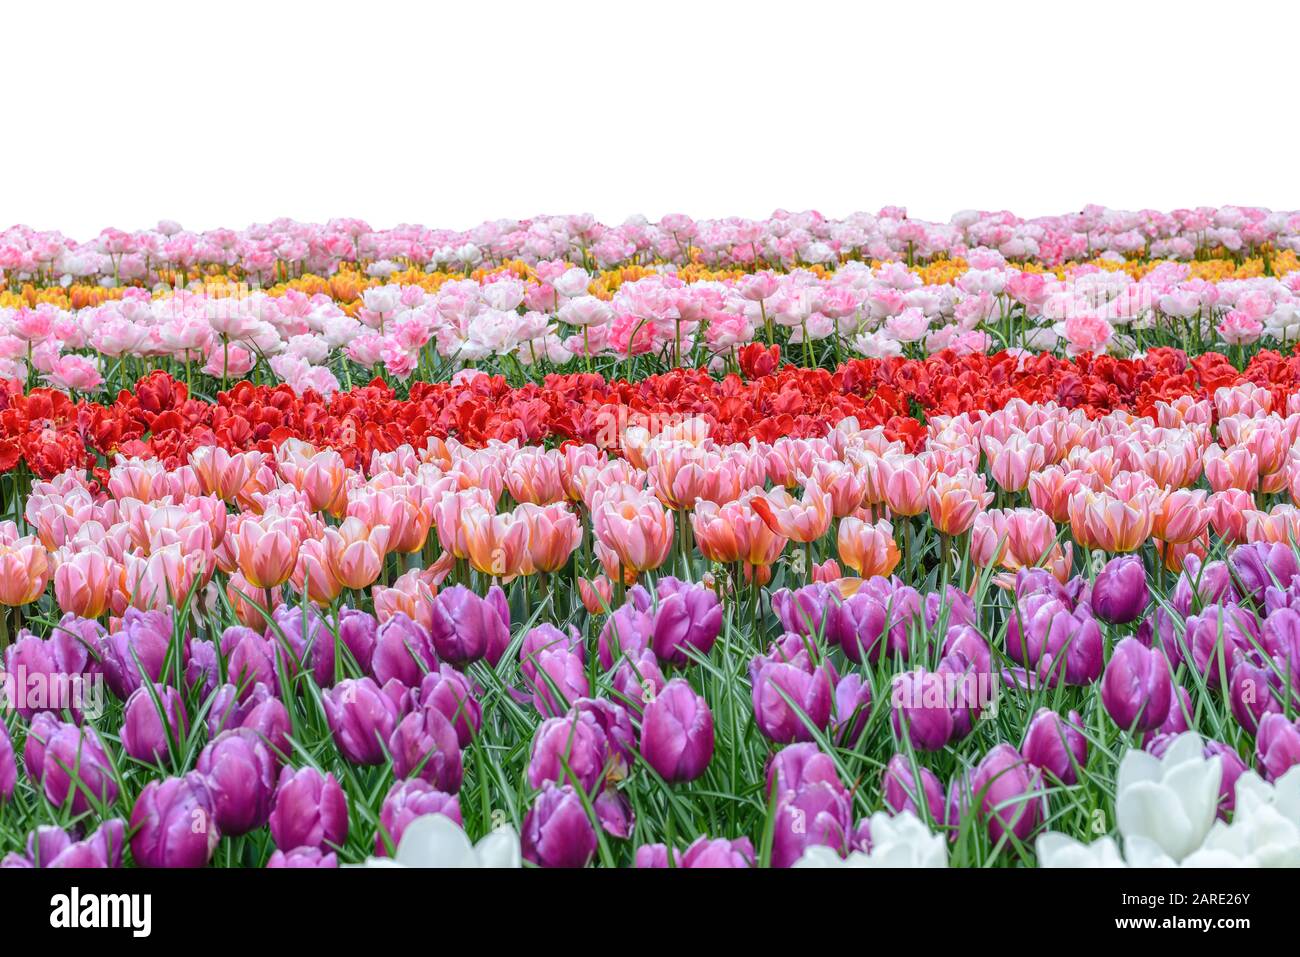 Primavera colophul tulipano bulbo fiore campo isolato su sfondo bianco Foto Stock